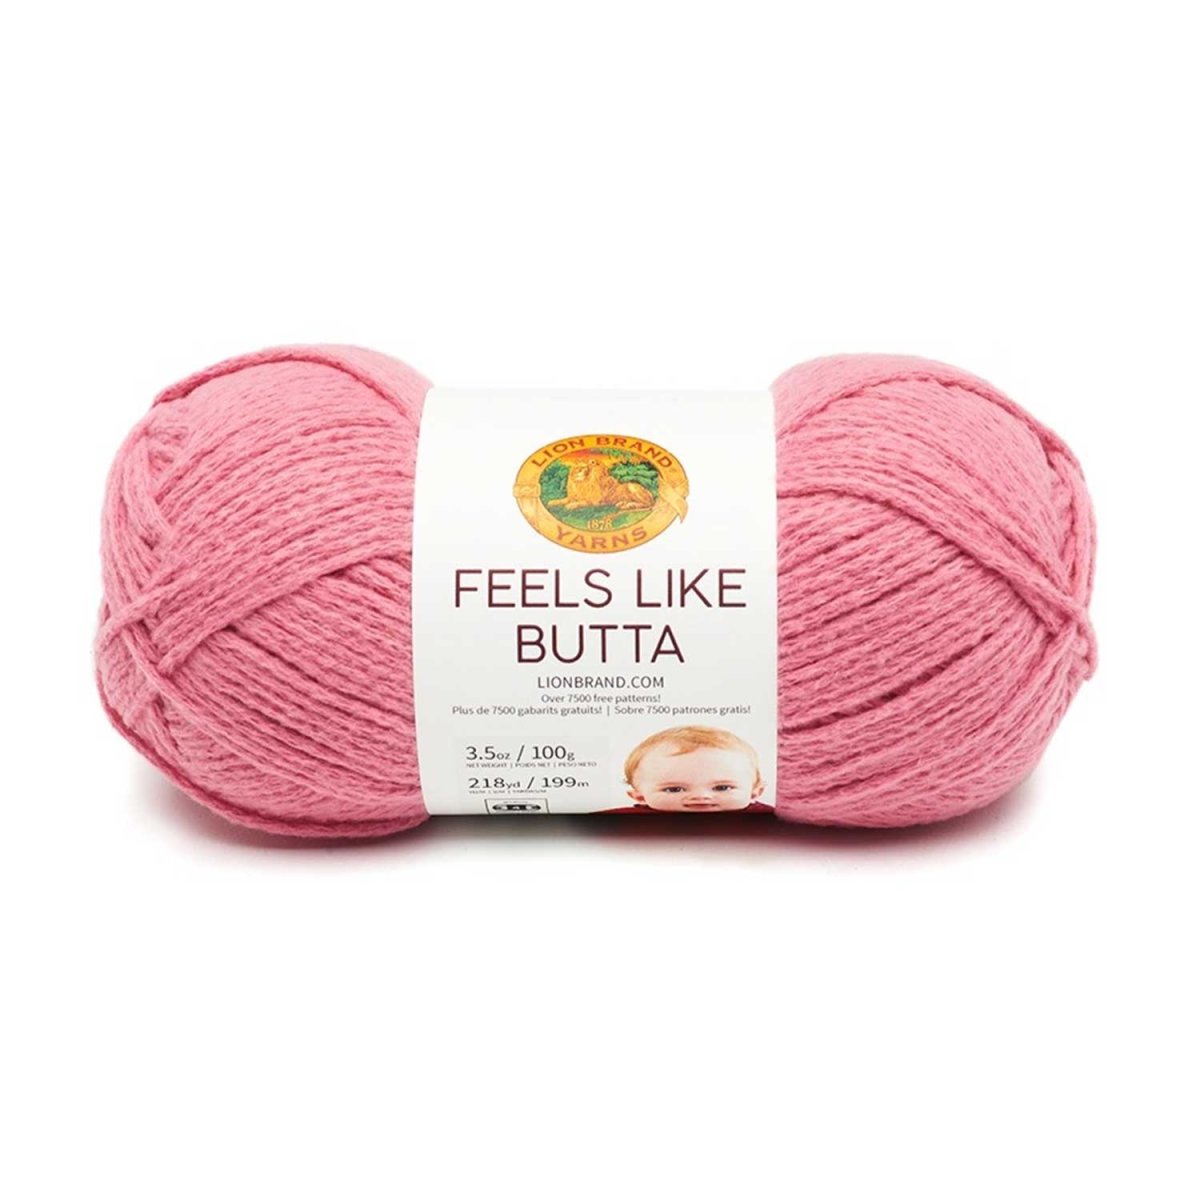 FEELS LIKE BUTTA - Crochetstores215-140